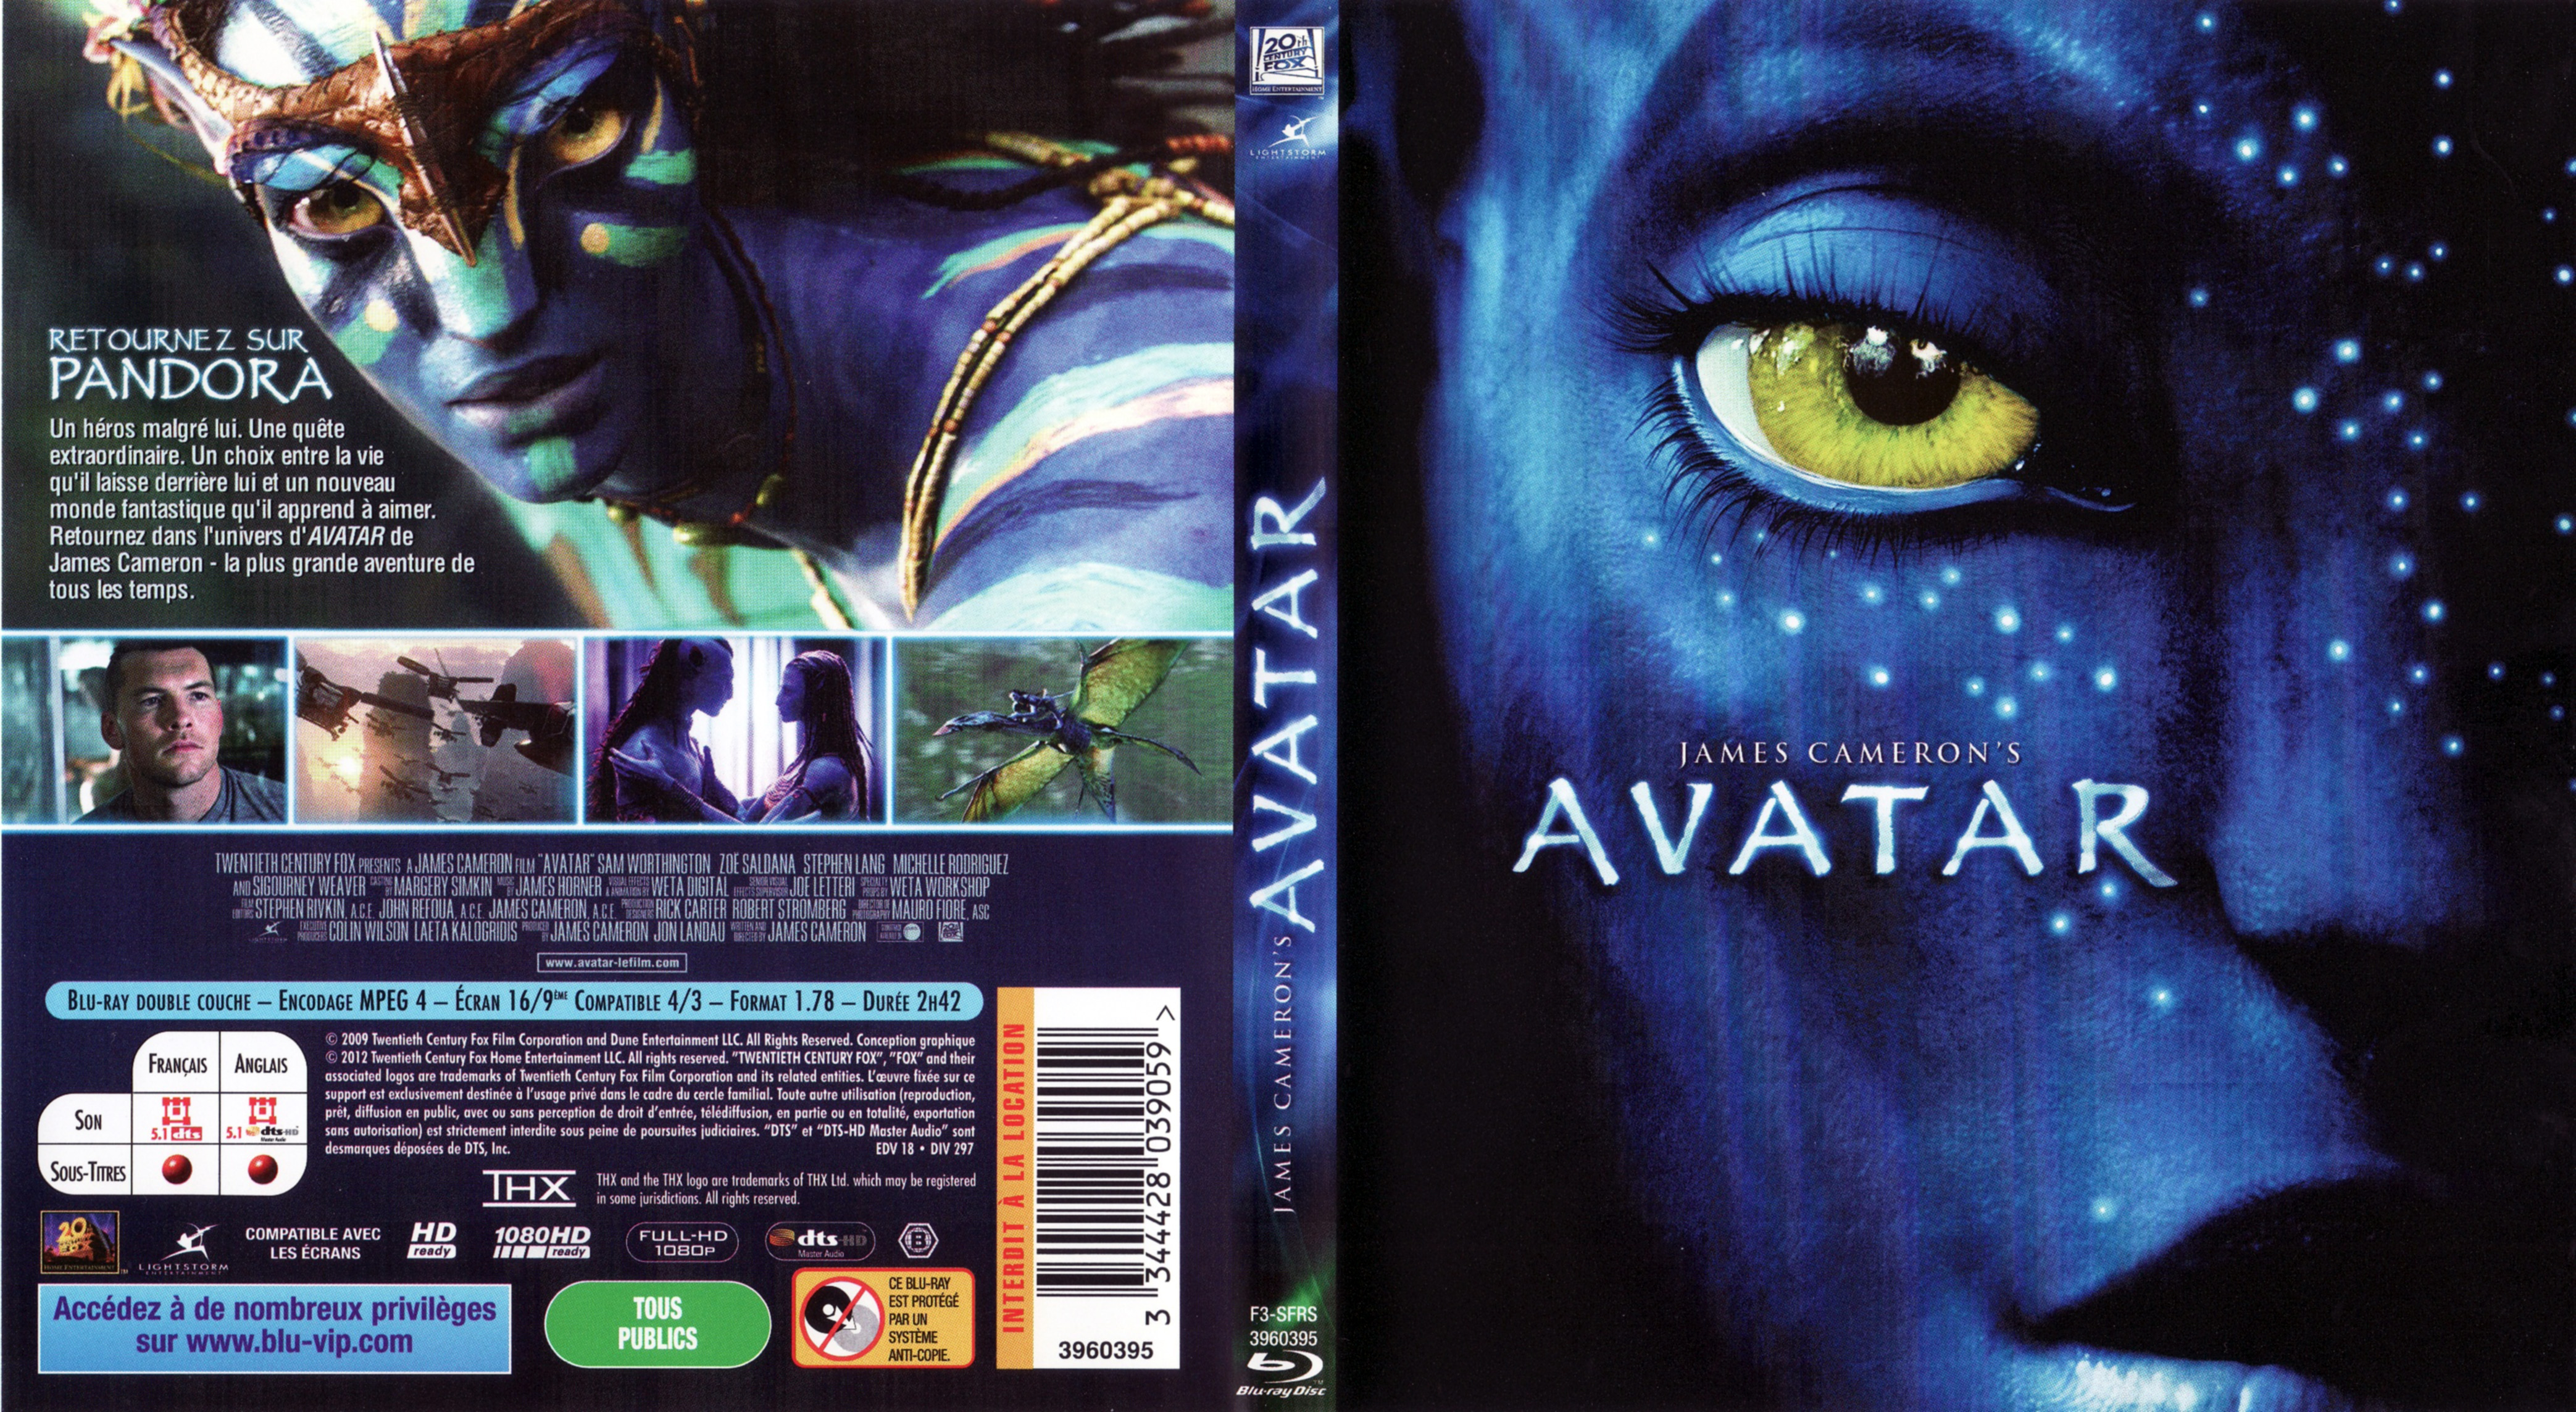 Jaquette DVD de Avatar BLU RAY v3 Cin 233 ma Passion